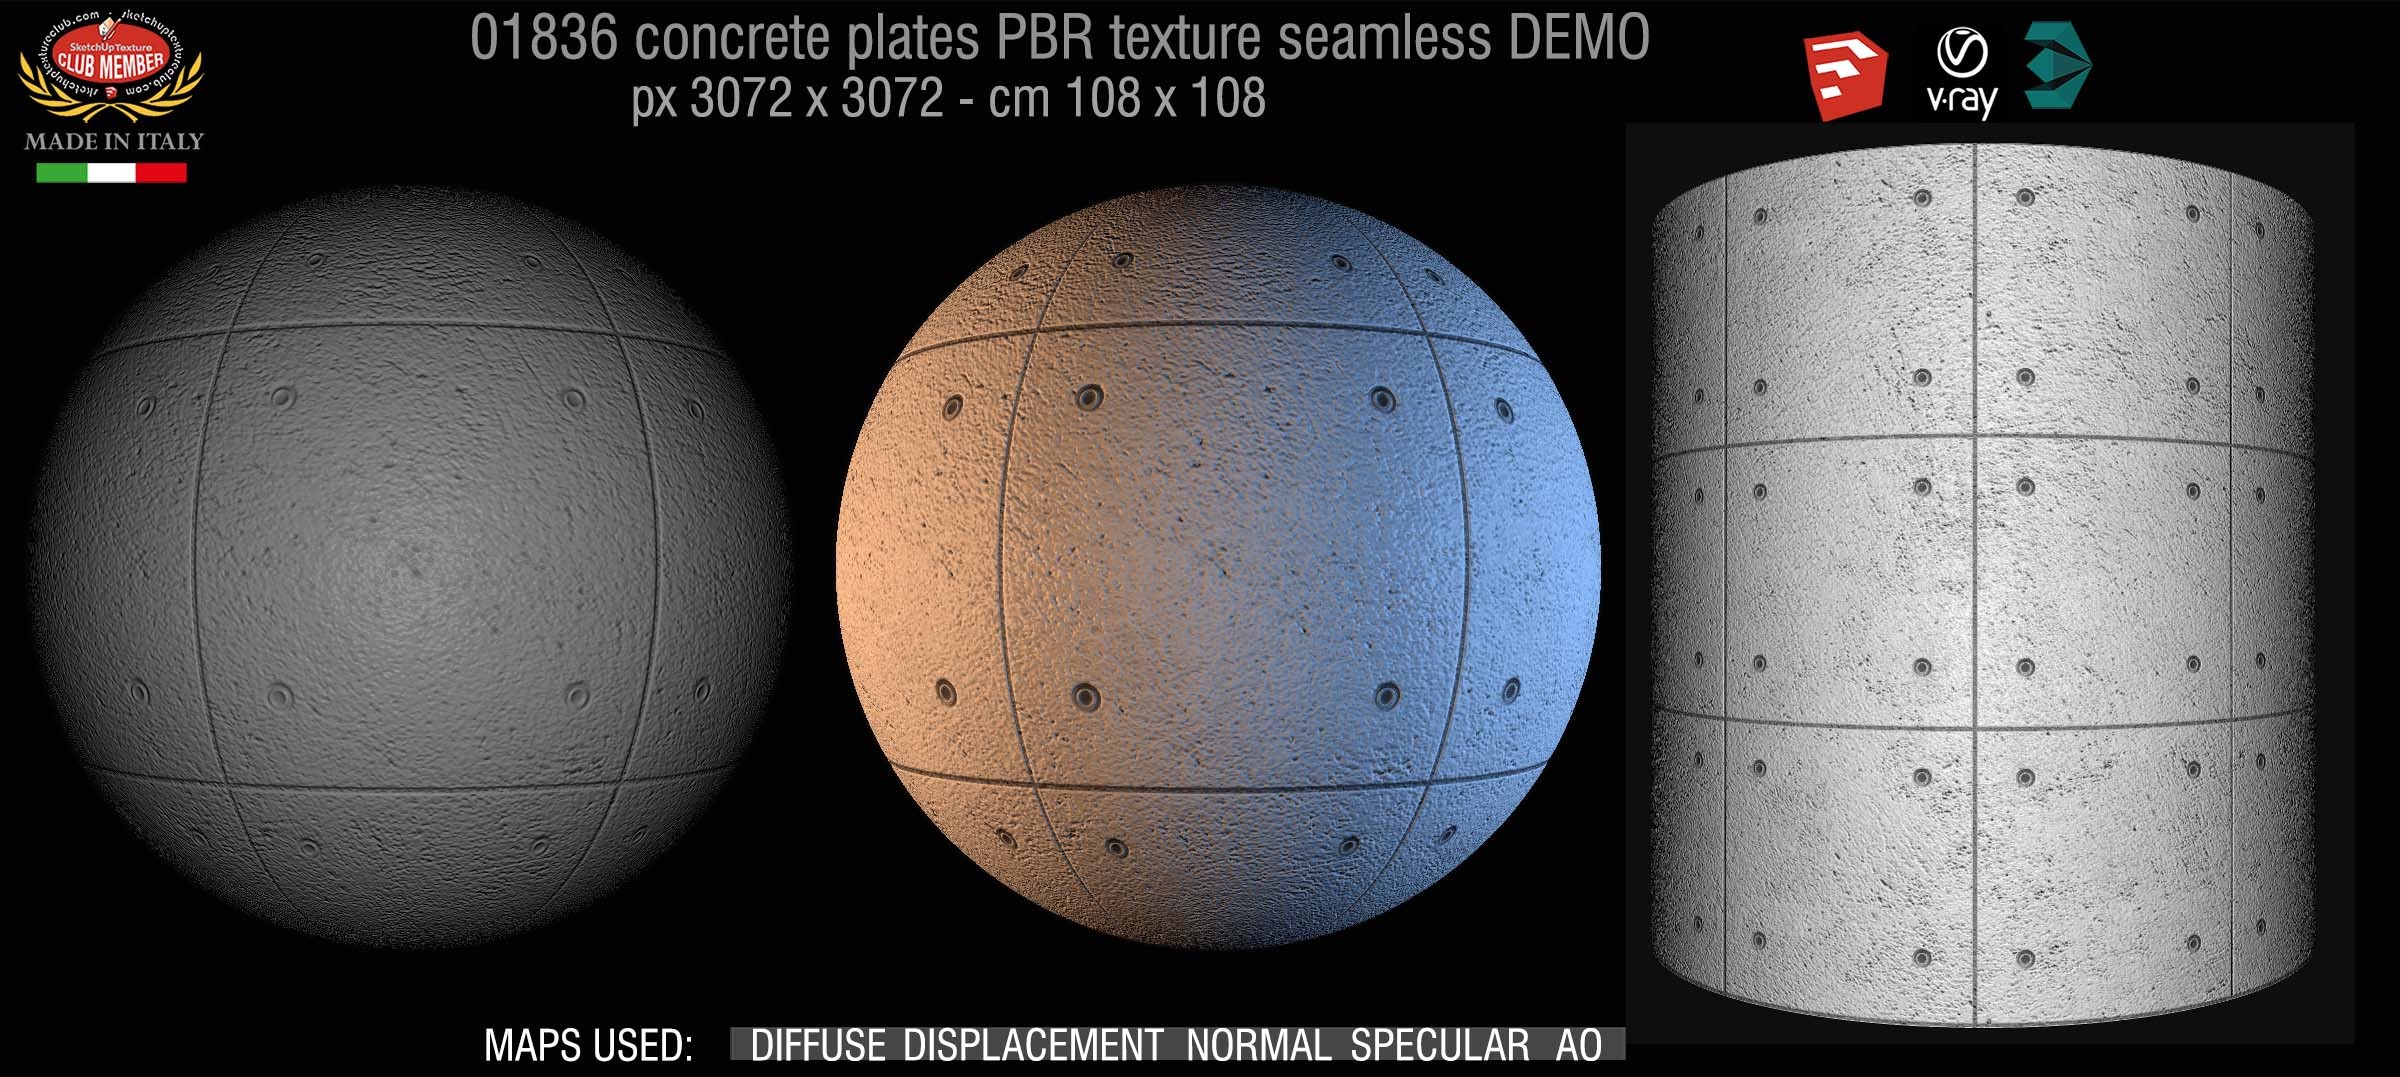 22_Tadao Ando concrete plates PBR texture seamless DEMO